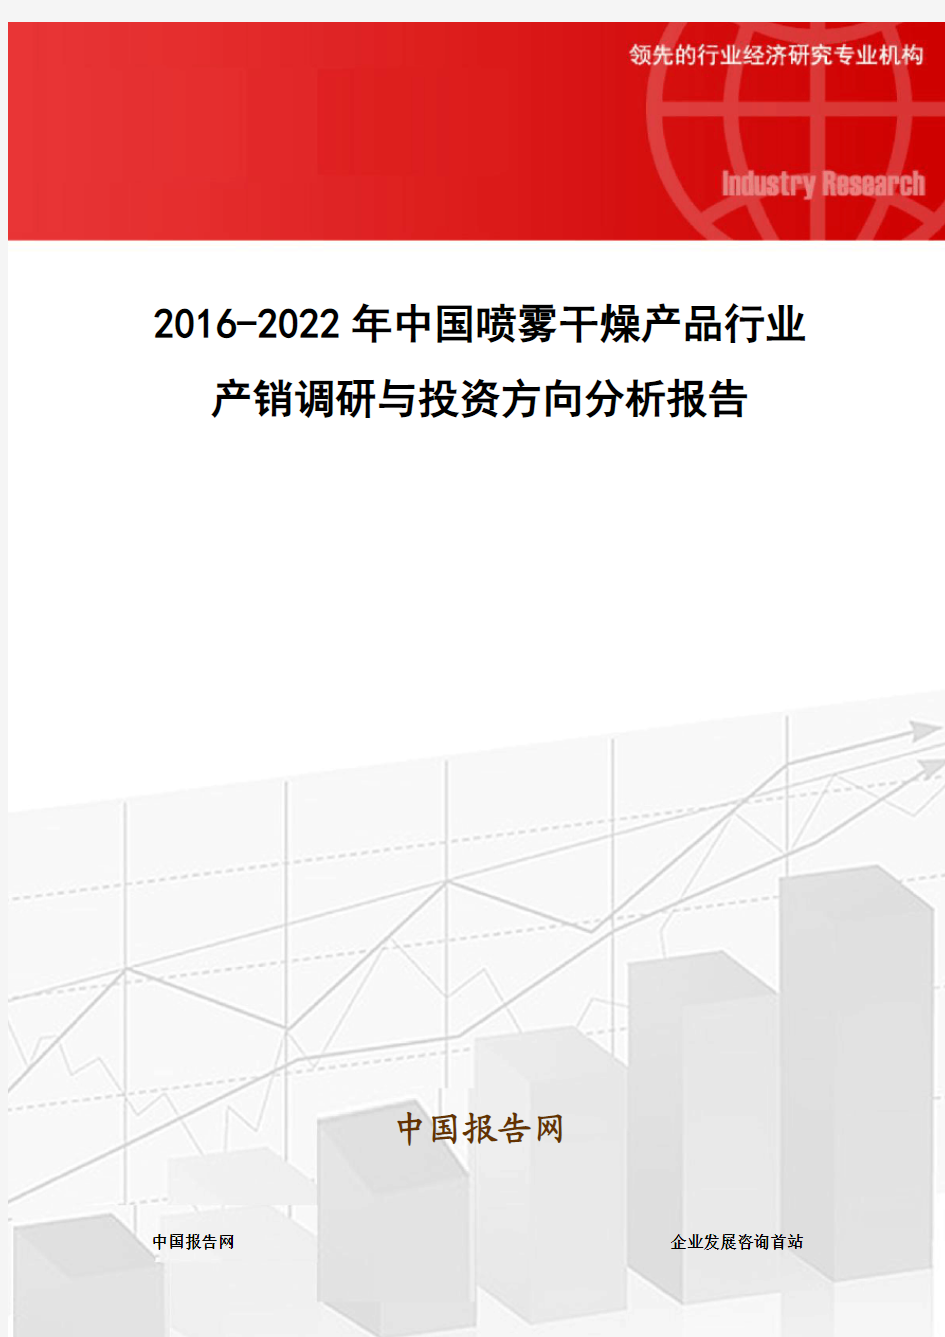 2016-2022年中国喷雾干燥产品行业产销调研与投资方向分析报告